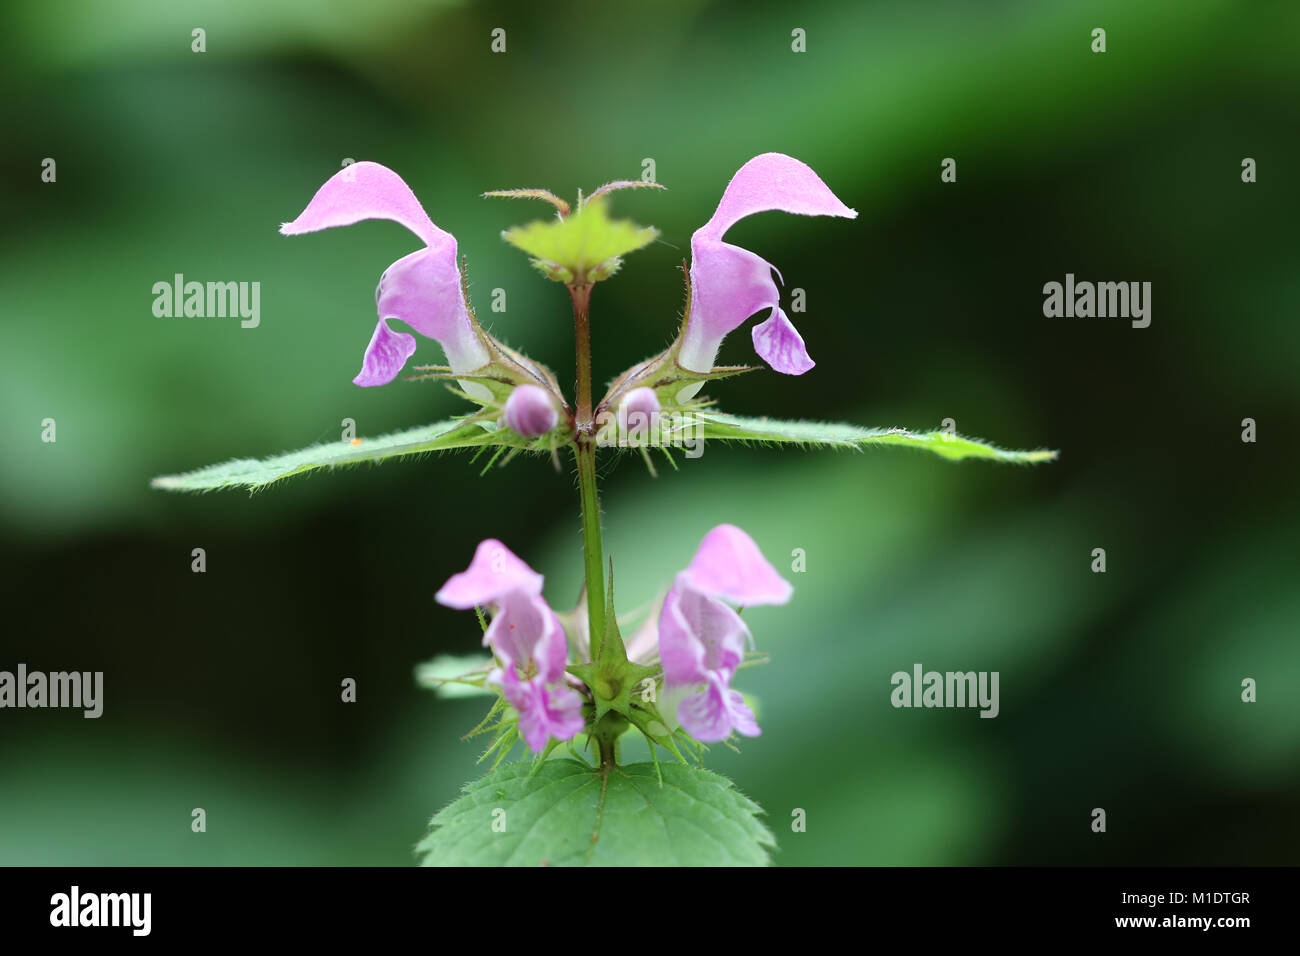 Blooming ciegos ortiga - hierba medicinal Foto de stock